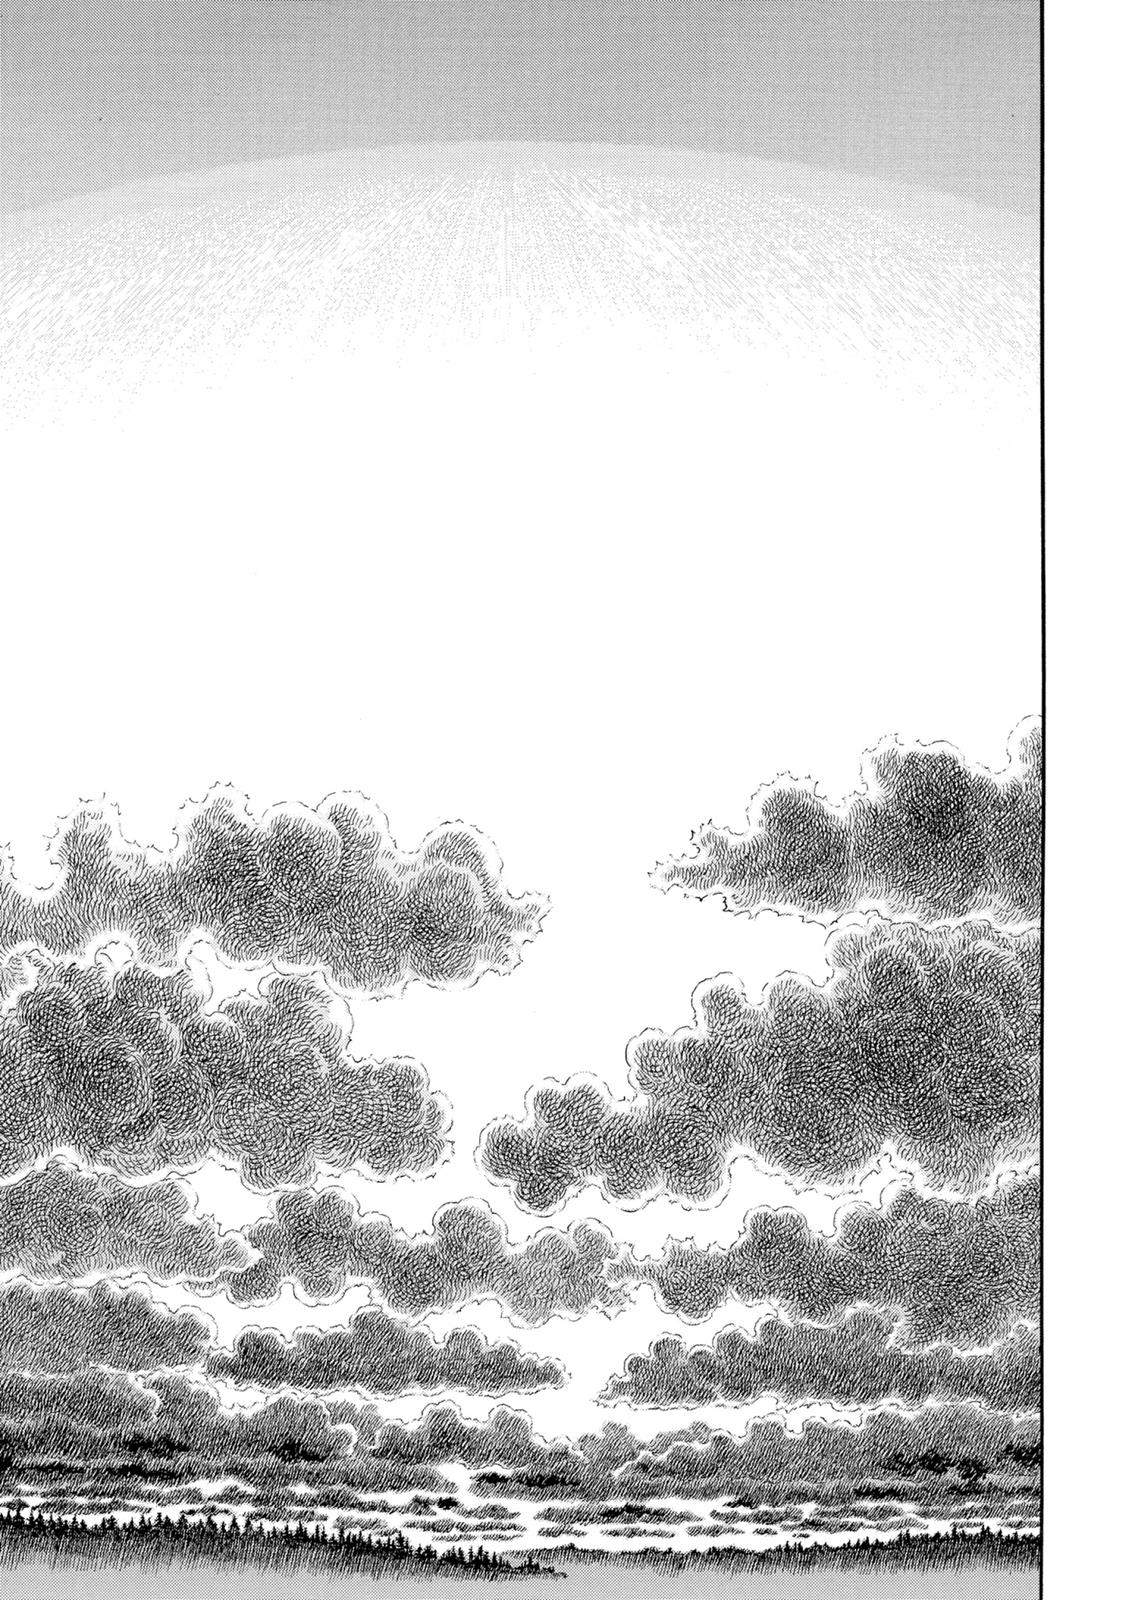 Berserk Manga Chapter 305 image 02